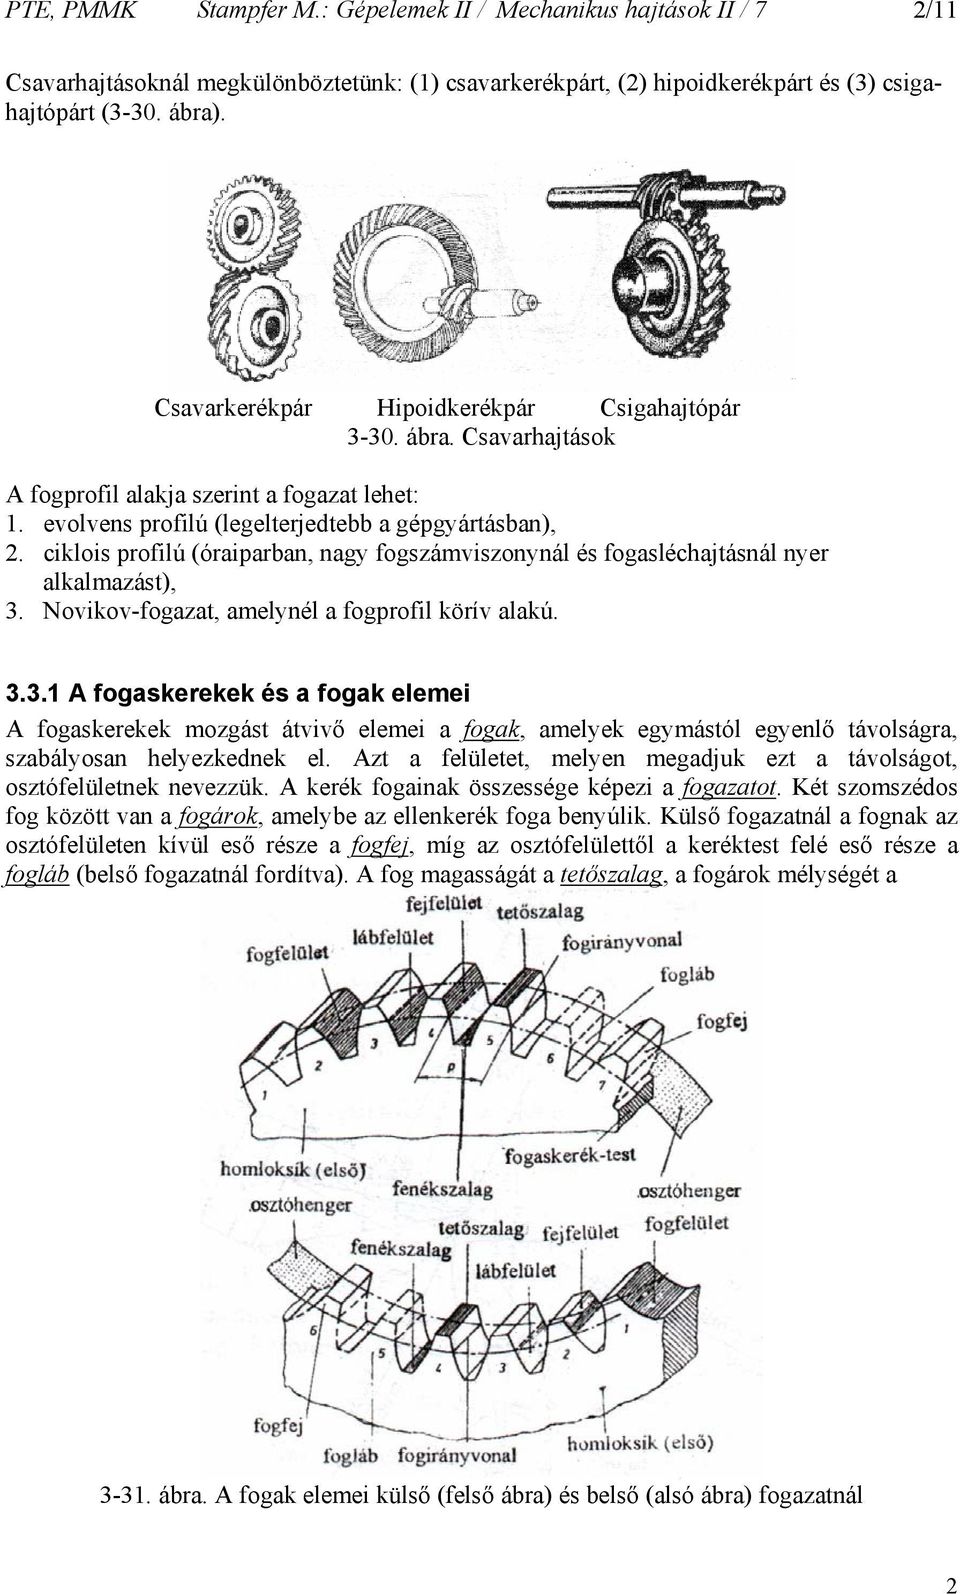 ciklois profilú (óraiparba, agy fogszámviszoyál és fogasléchajtásál yer alkalmazást), 3.